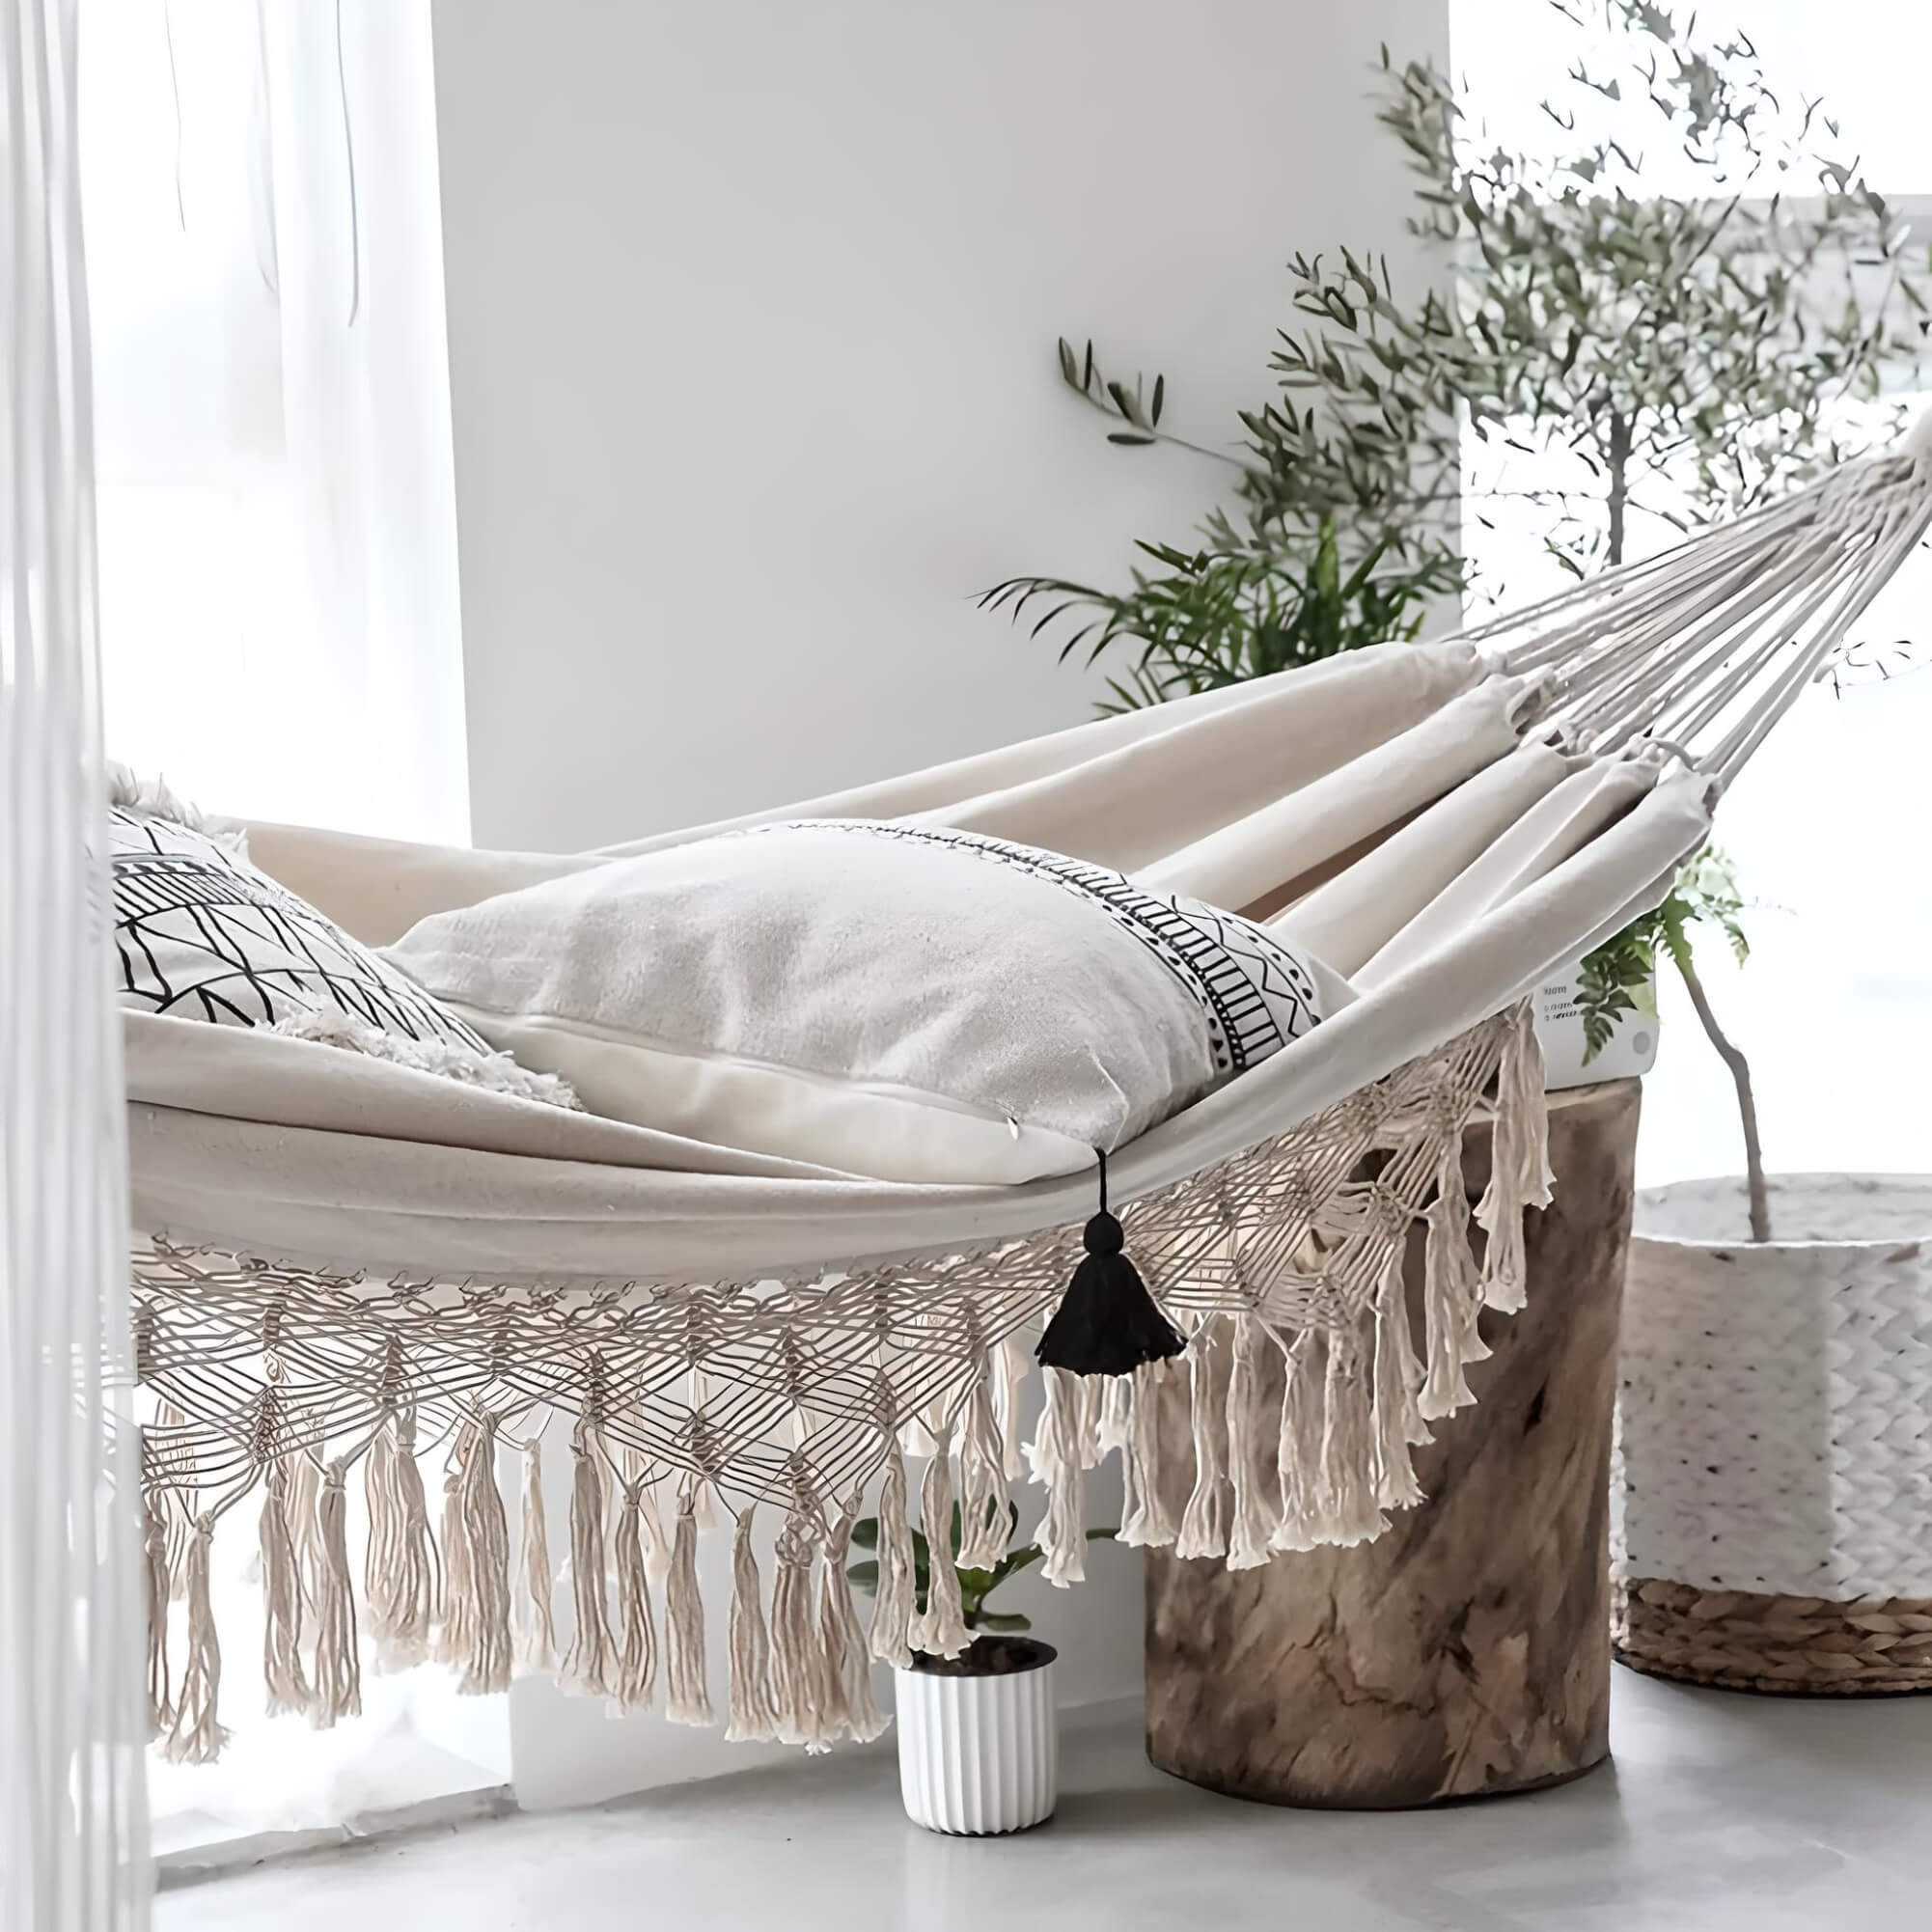 2-person-brazilian-hammock-hanging-in-bedroom